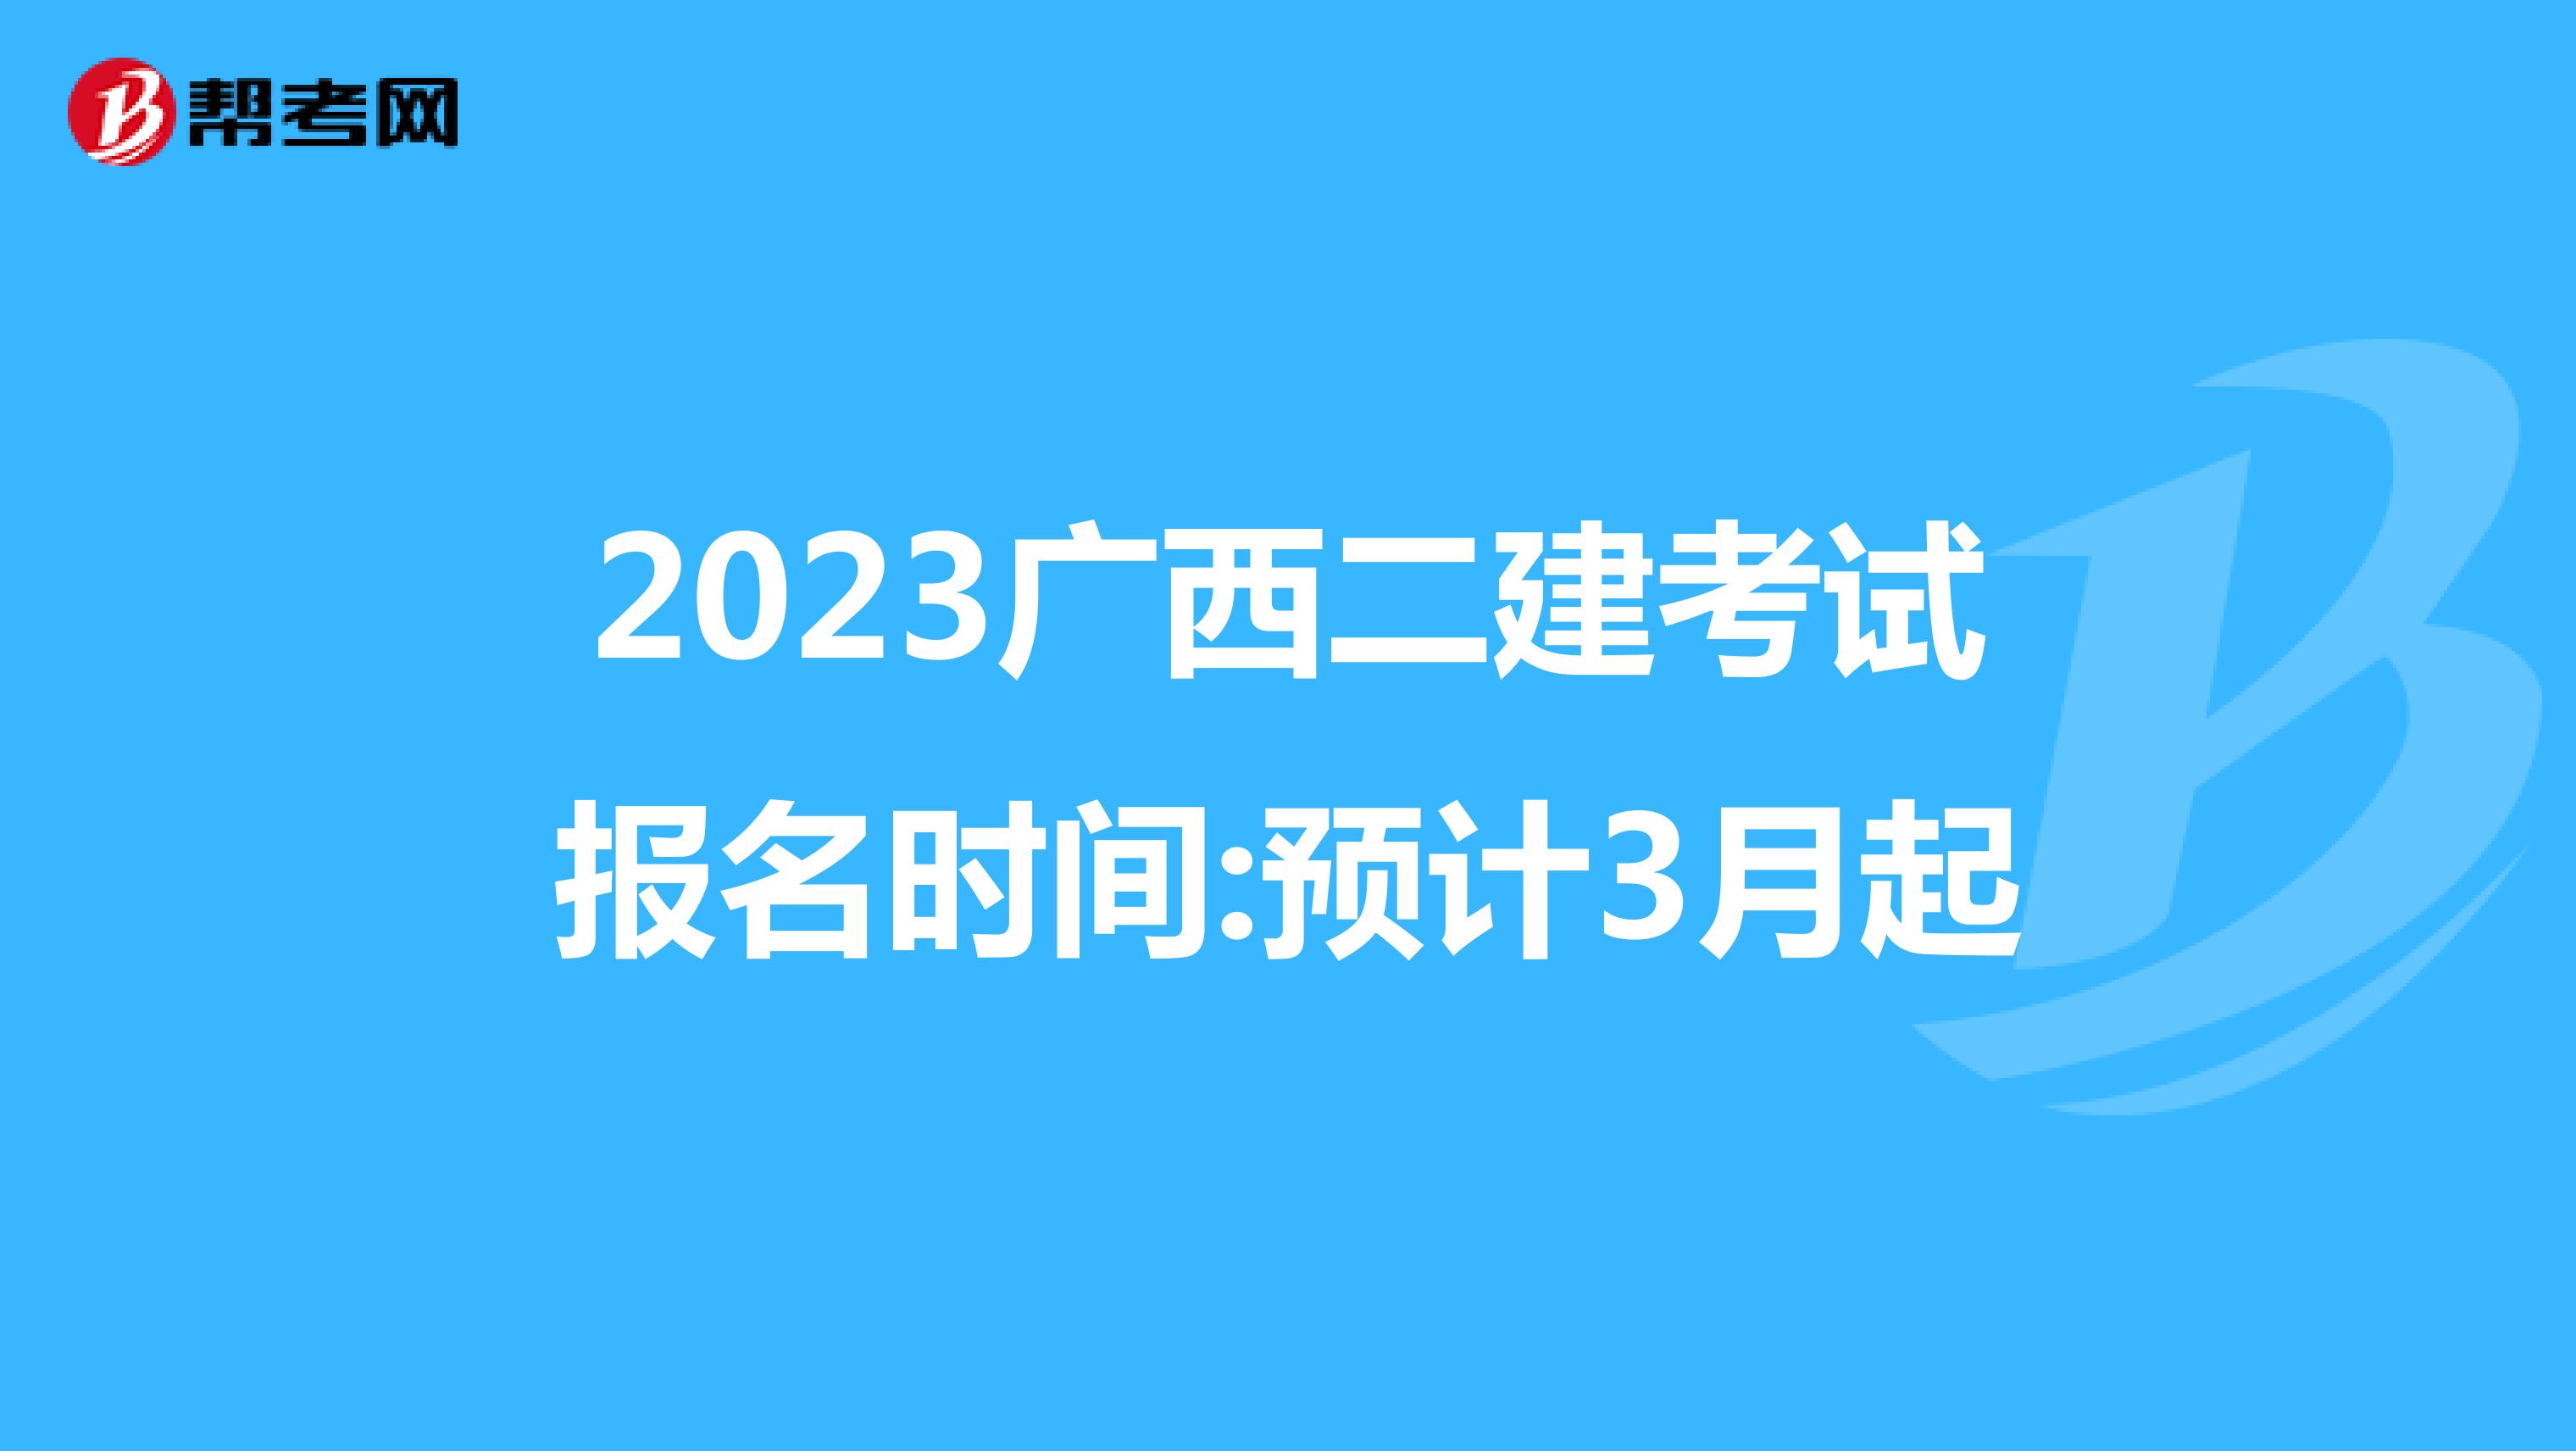 2023广西二建考试报名时间:预计3月起